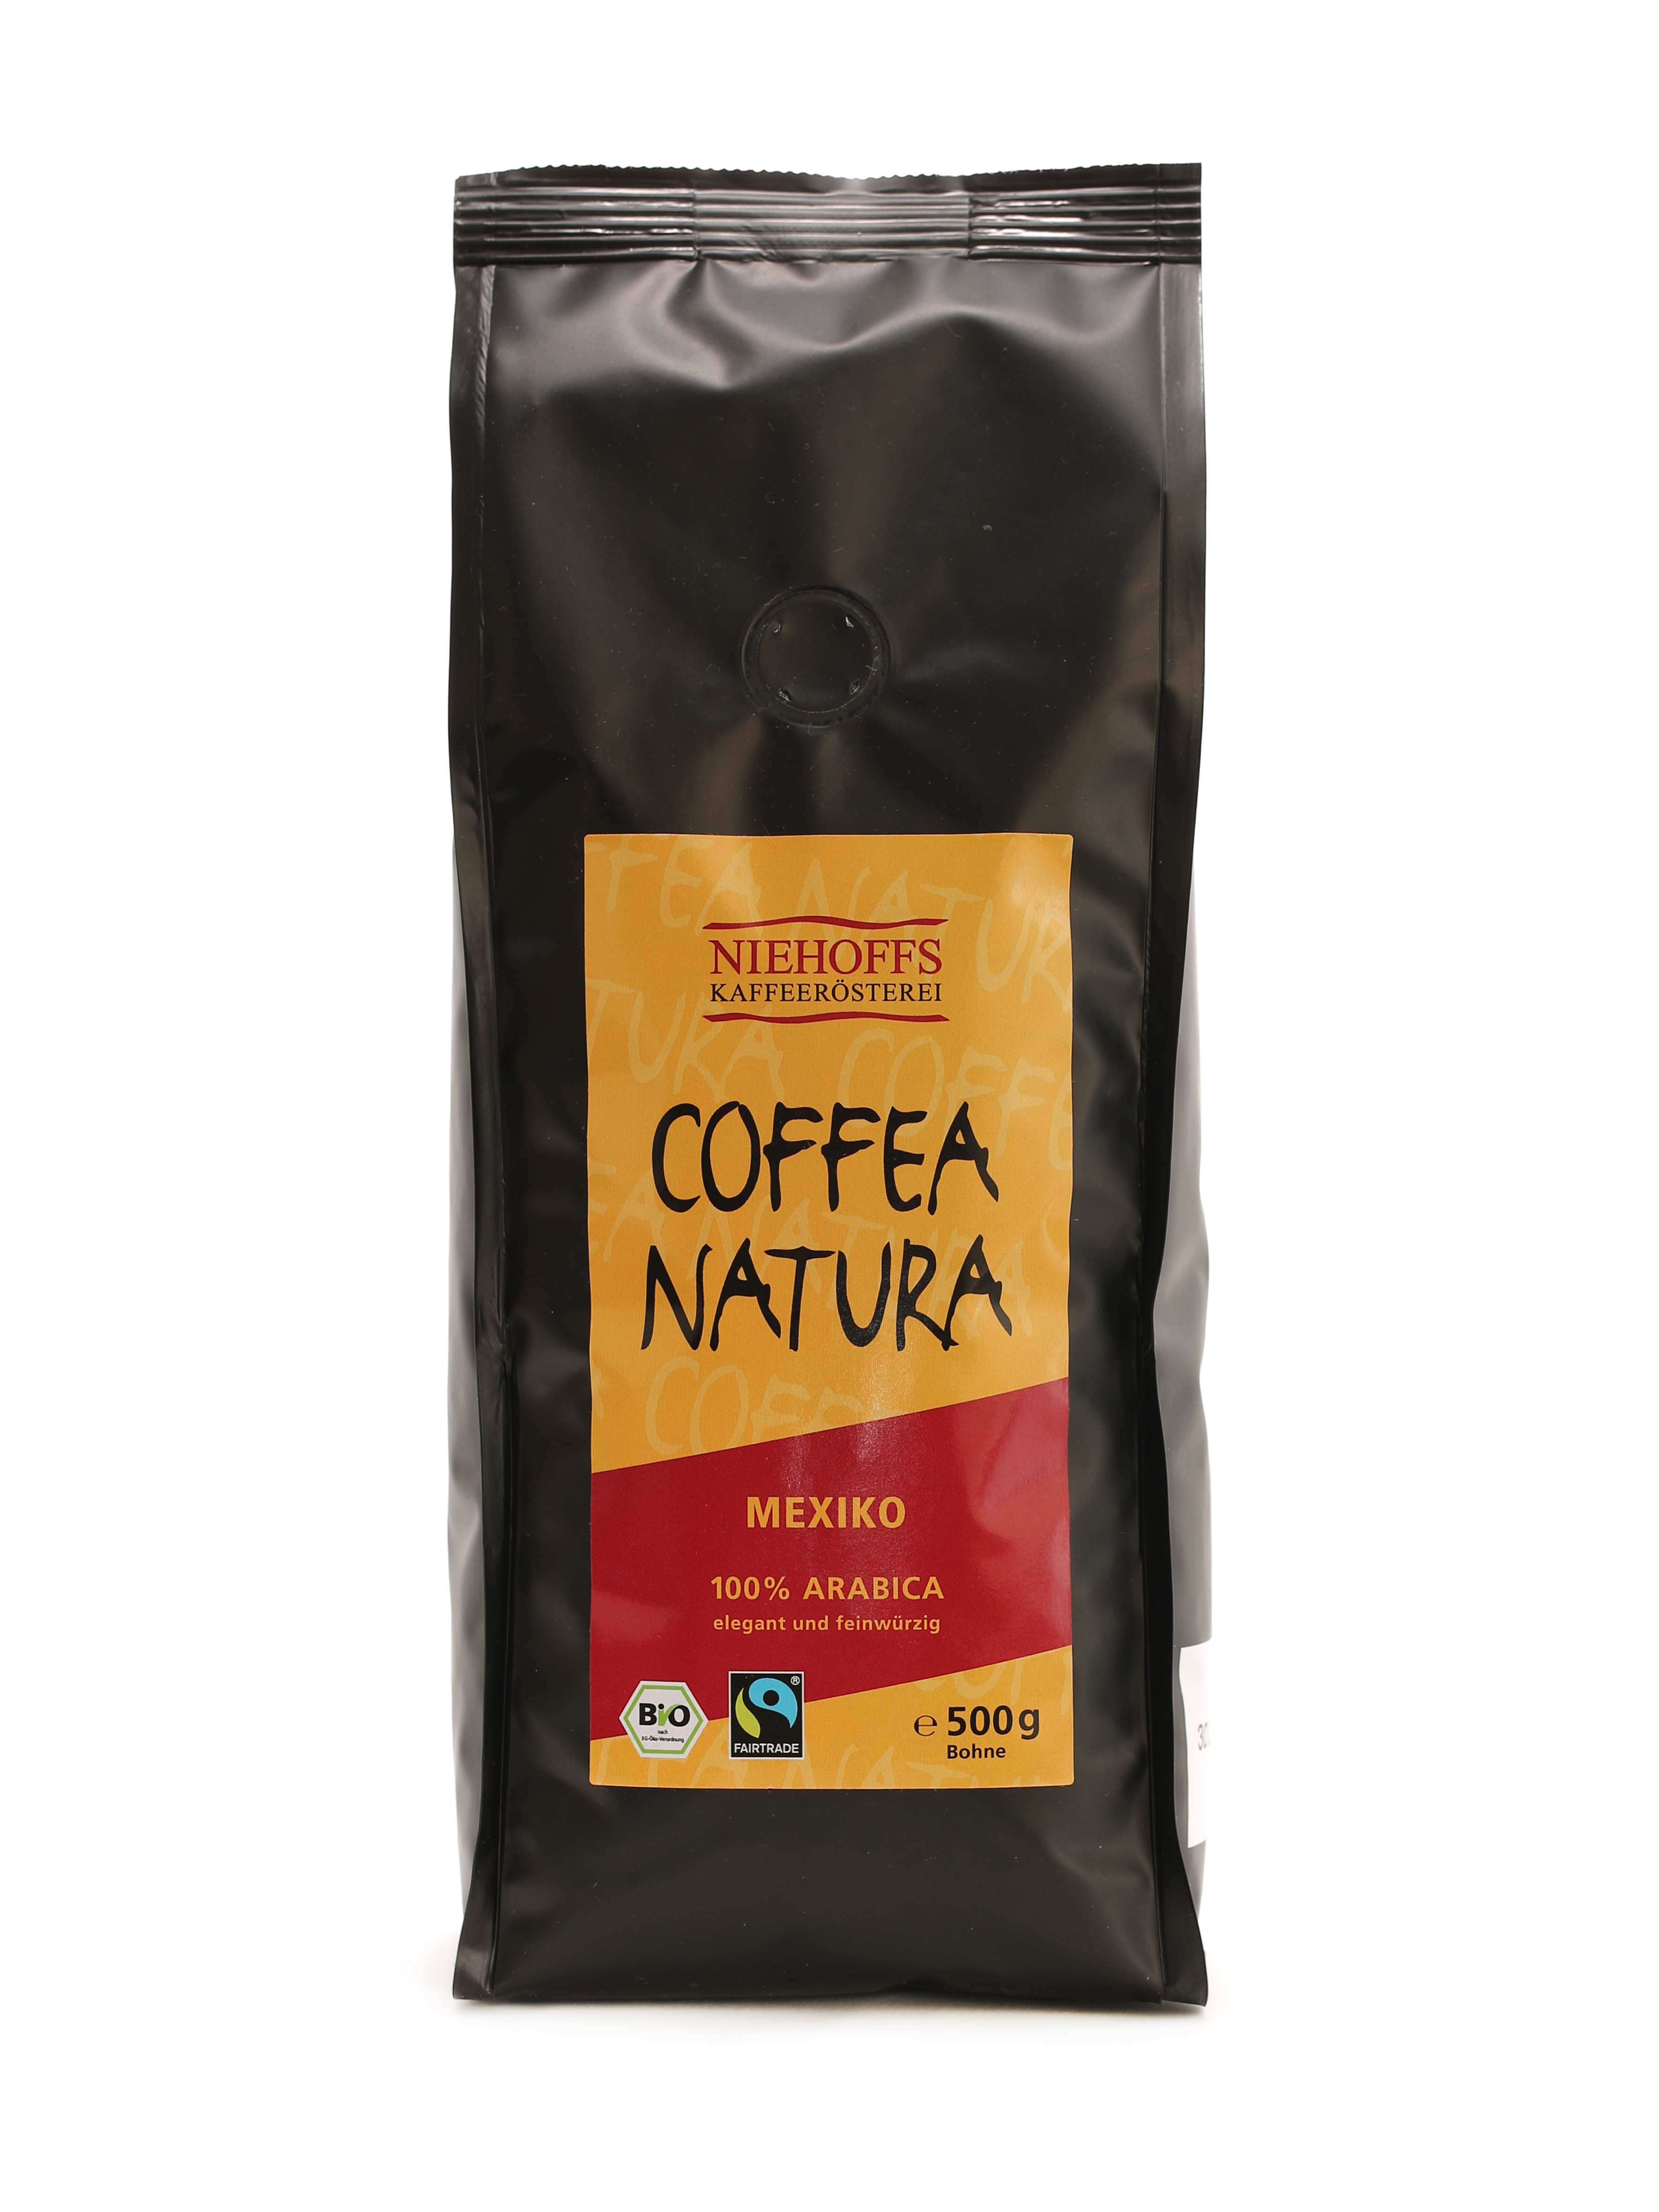 Coffea Natura Transfair